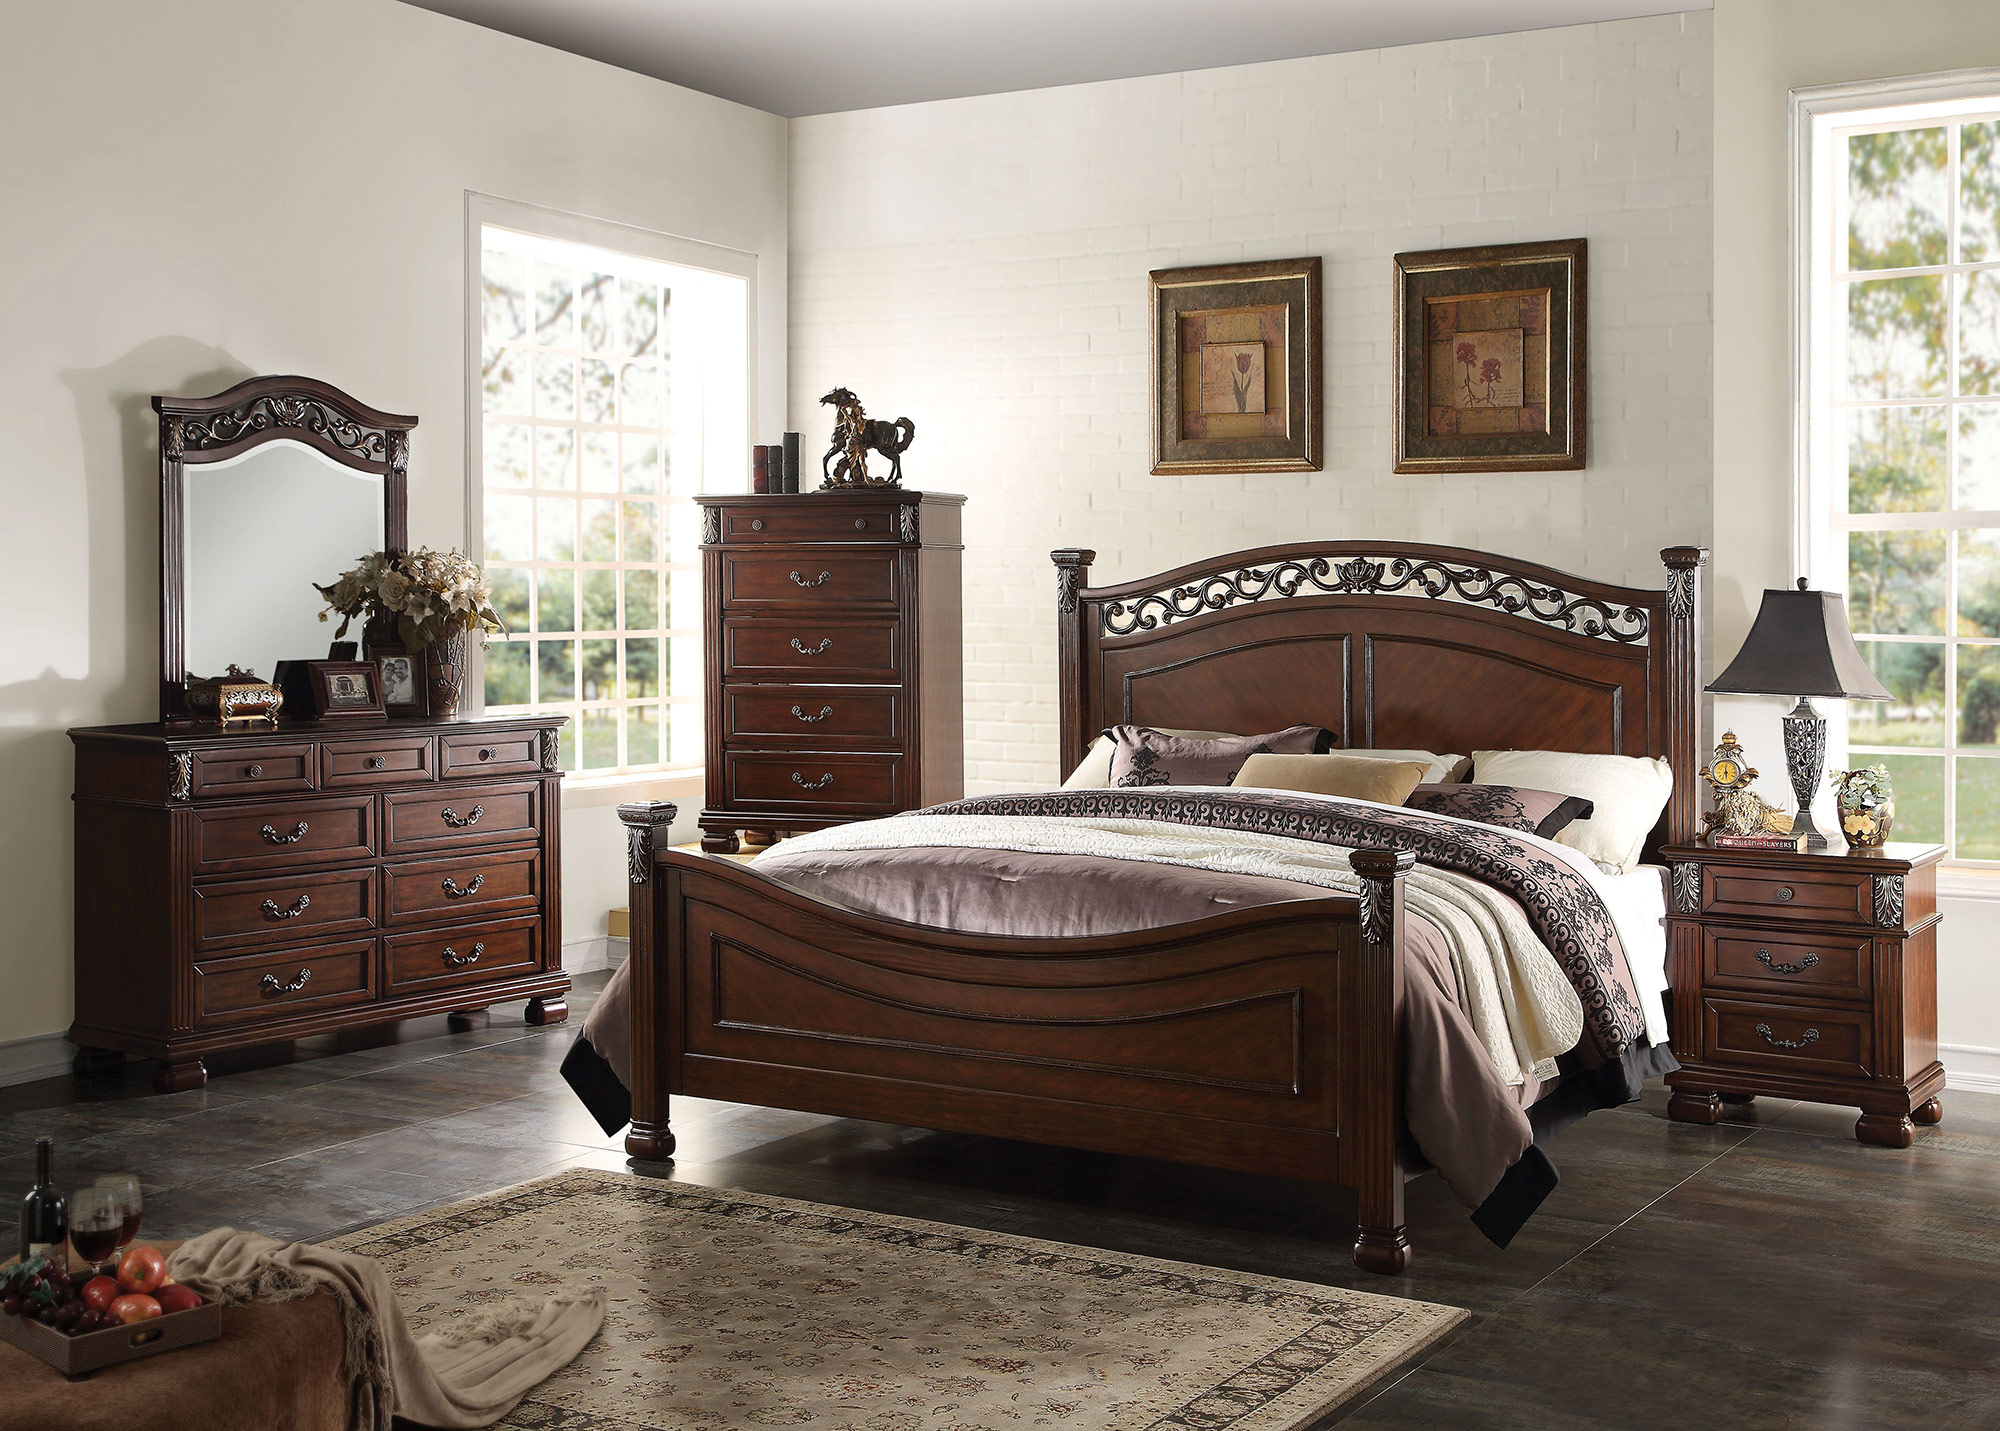 bedroom furniture mansfield uk